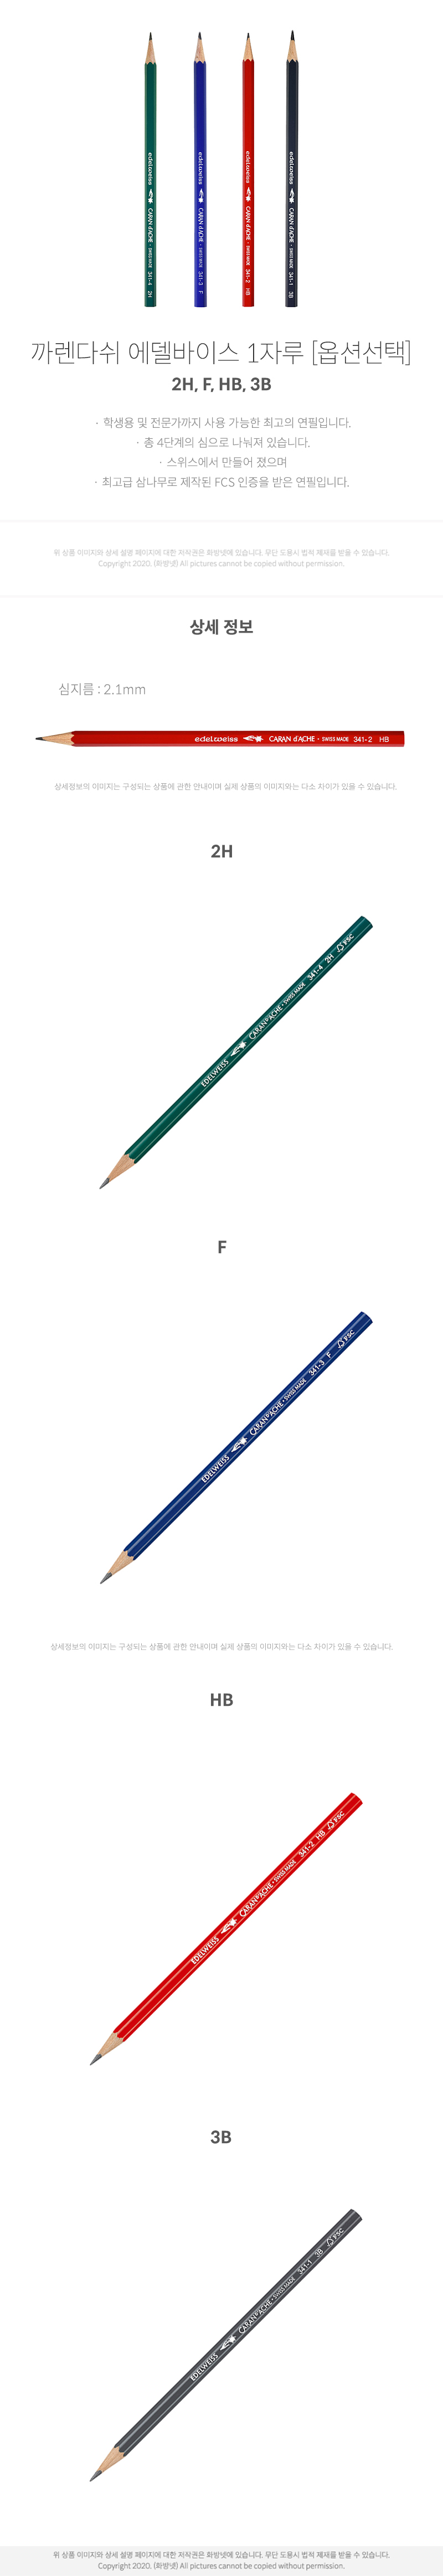 까렌다쉬 에델바이스 연필 1자루 2H, F, HB, 3B [옵션선택]